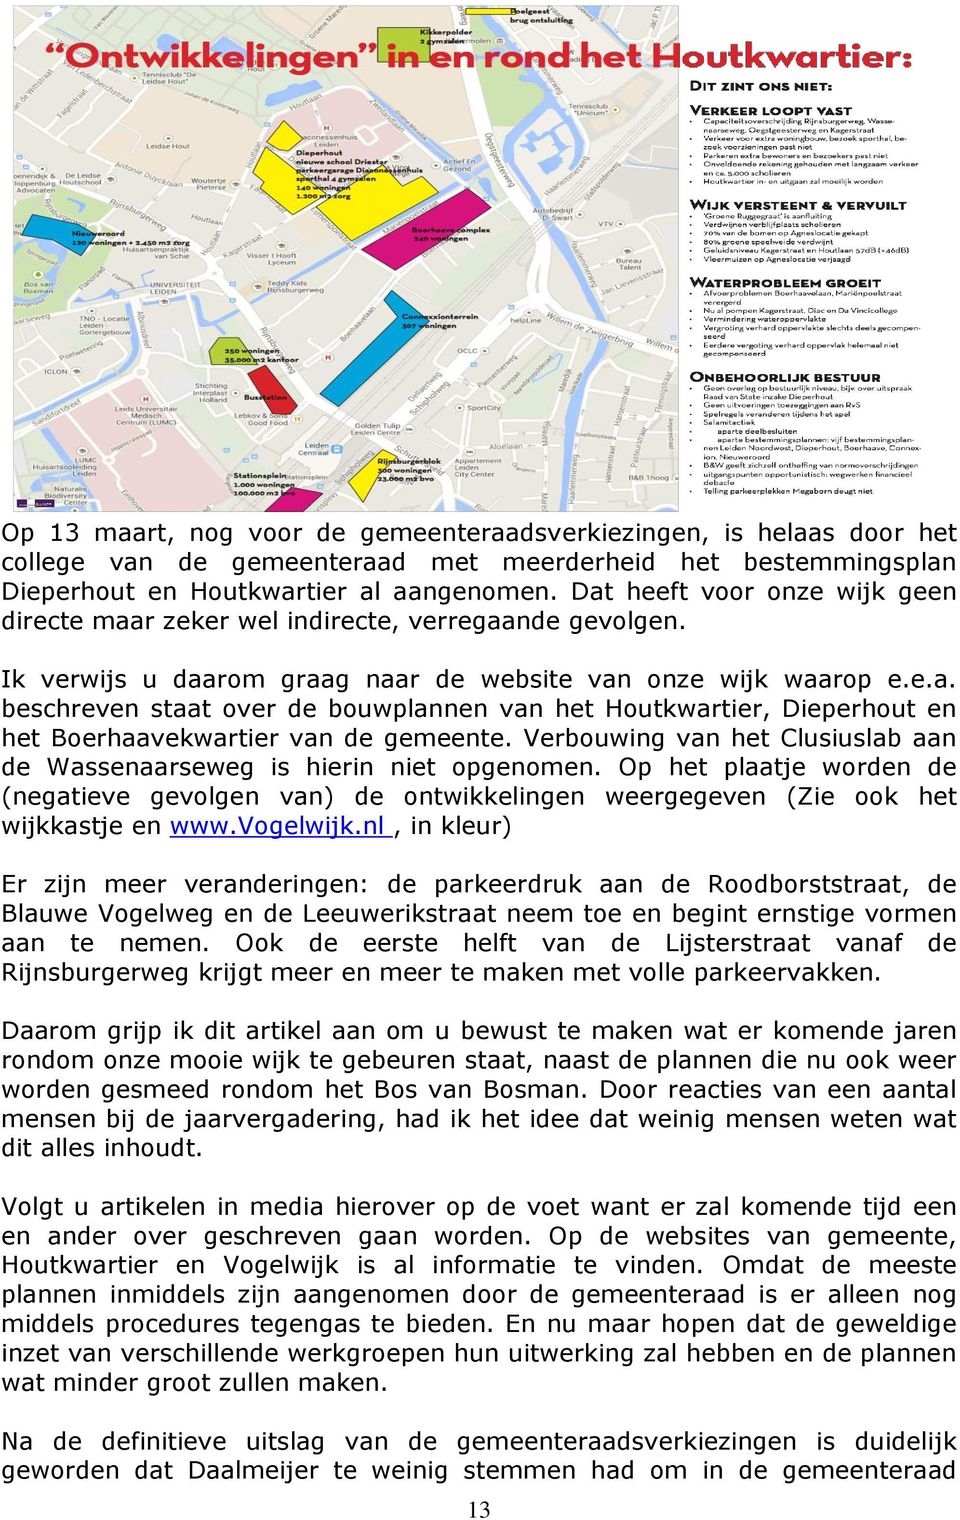 Verbouwing van het Clusiuslab aan de Wassenaarseweg is hierin niet opgenomen. Op het plaatje worden de (negatieve gevolgen van) de ontwikkelingen weergegeven (Zie ook het wijkkastje en www.vogelwijk.